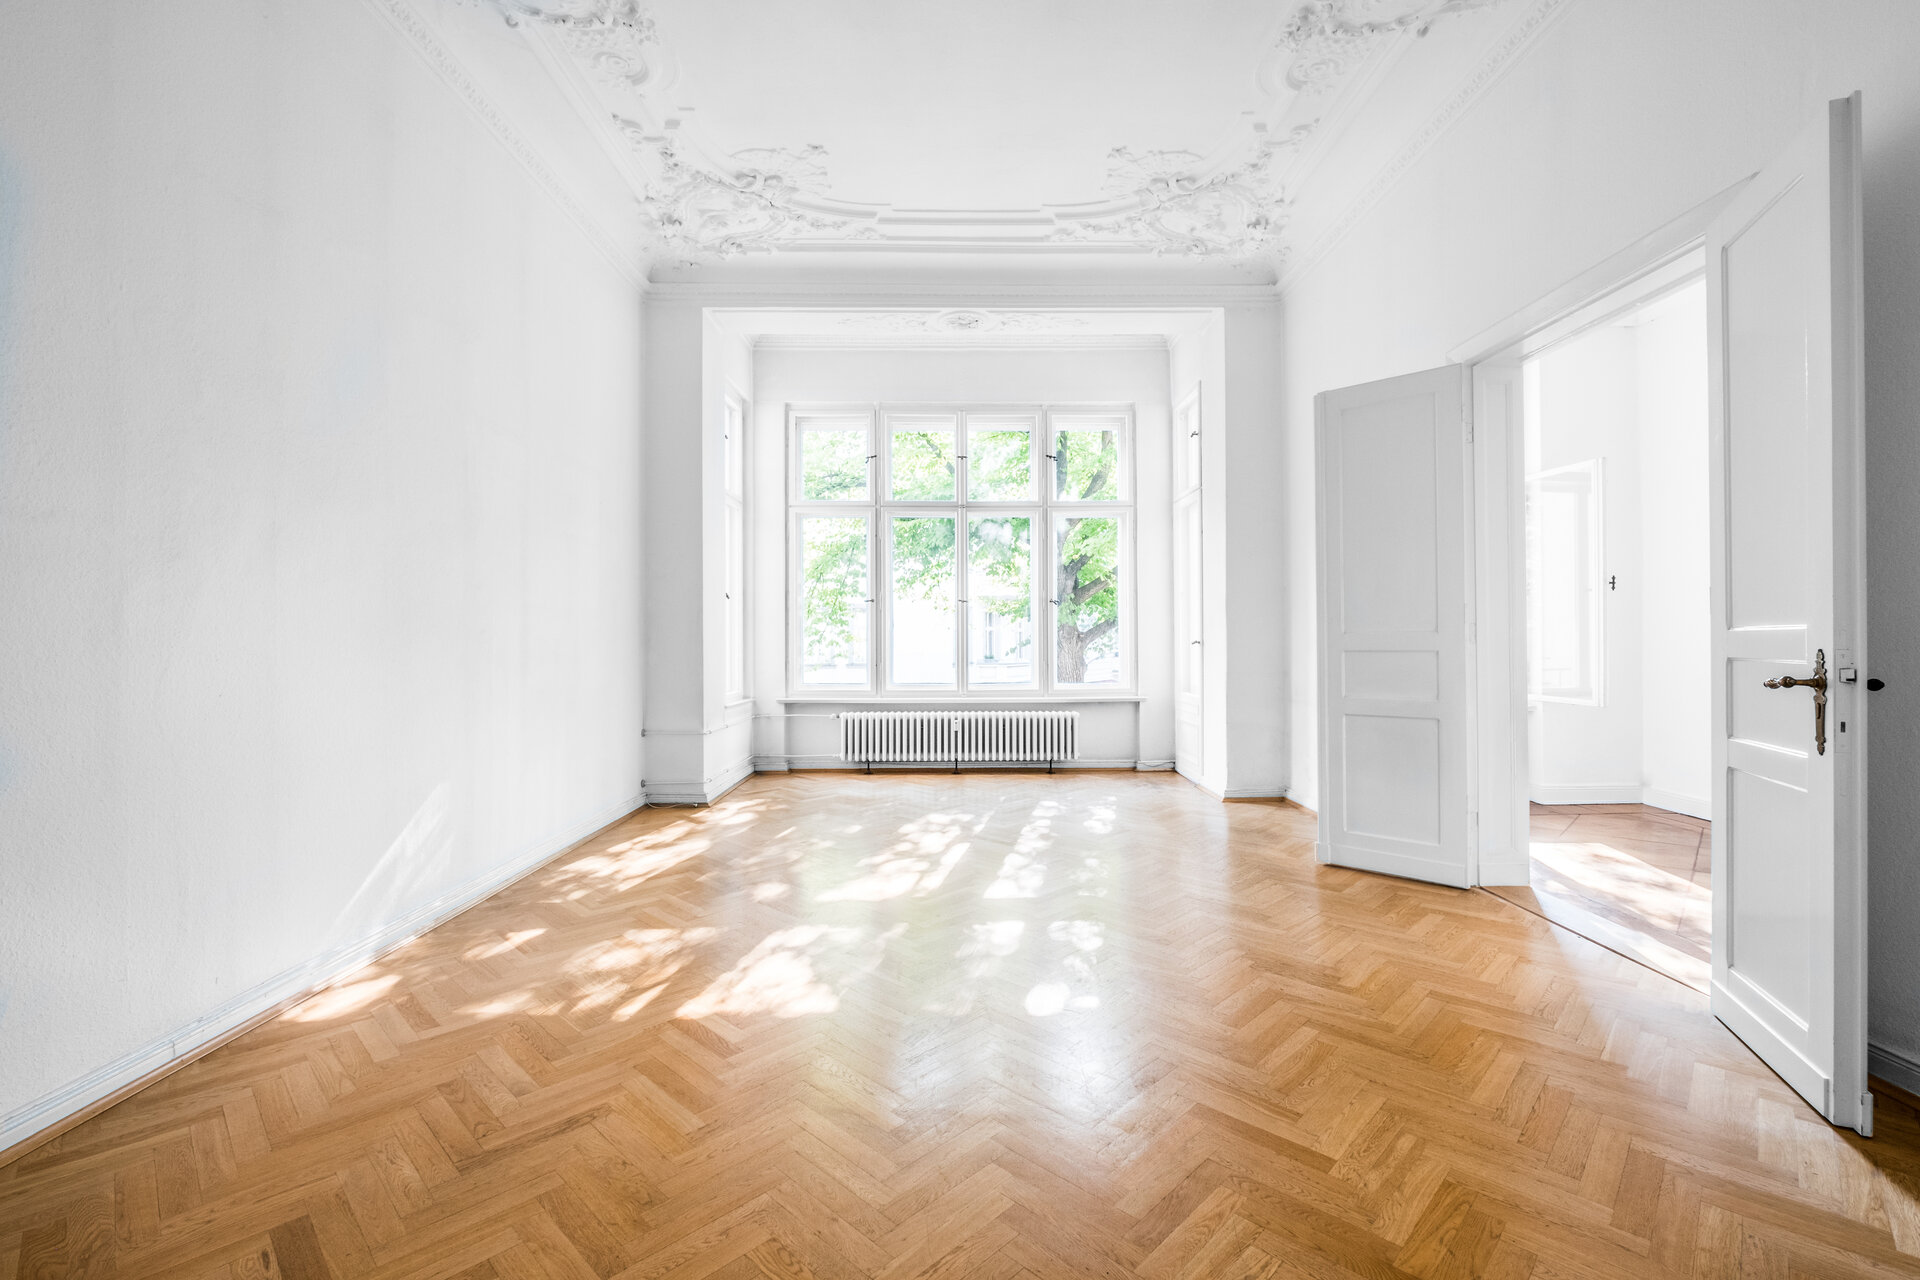 Zimmer in Mehrfamilienhaus mit Klick Vinylboden in Holzparkett Optik